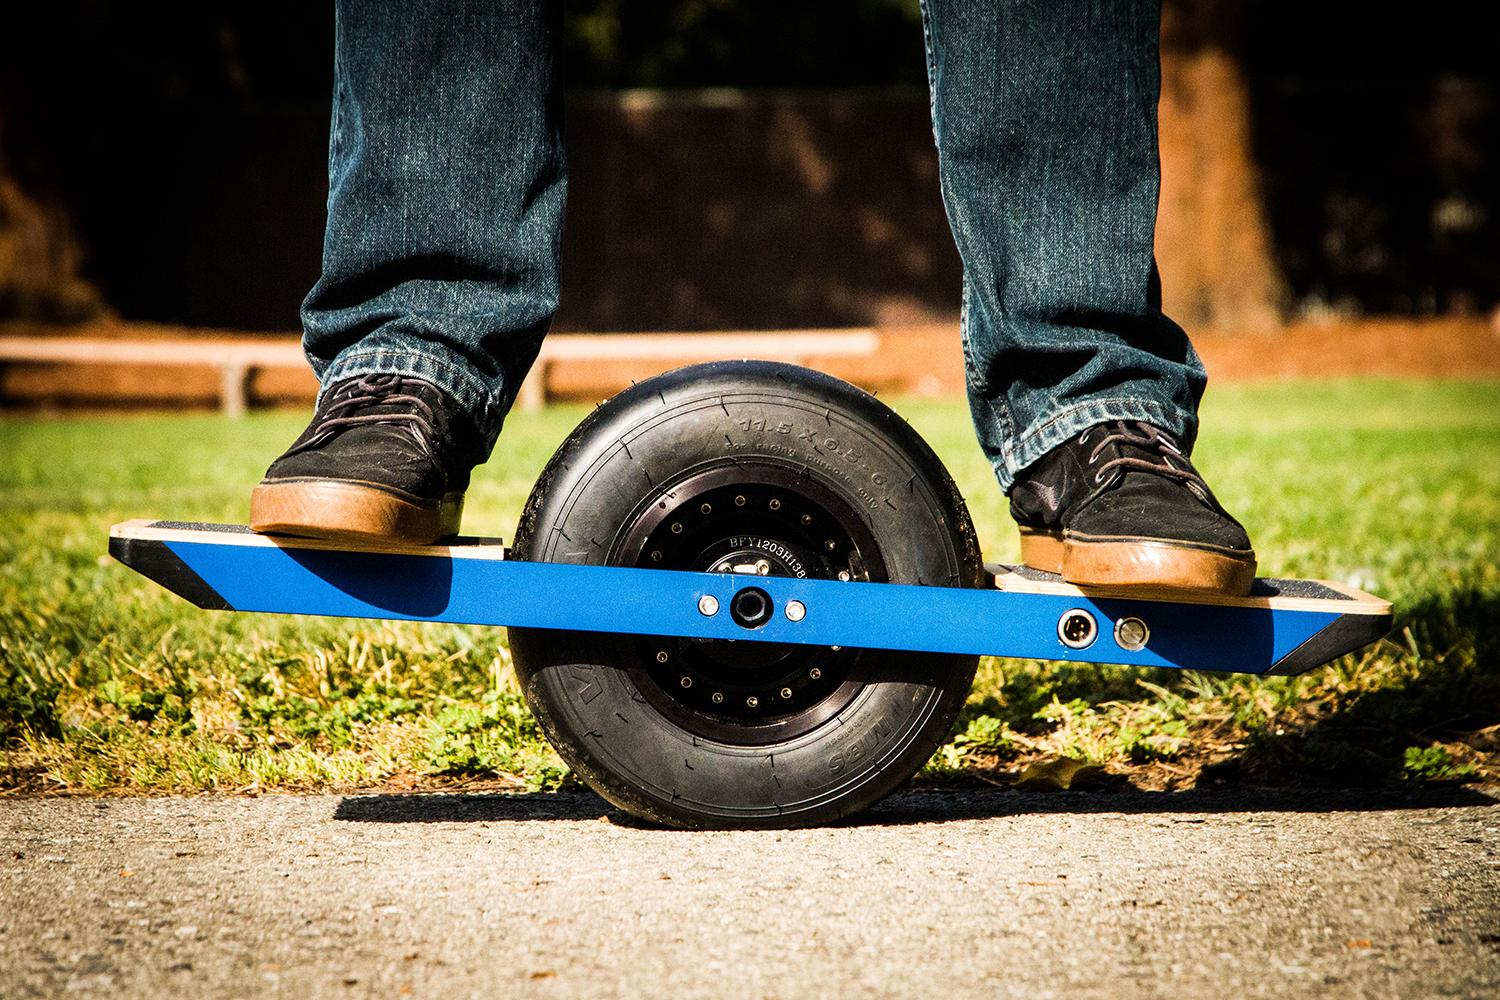 onewheel electric skateboard lifestyle image 25